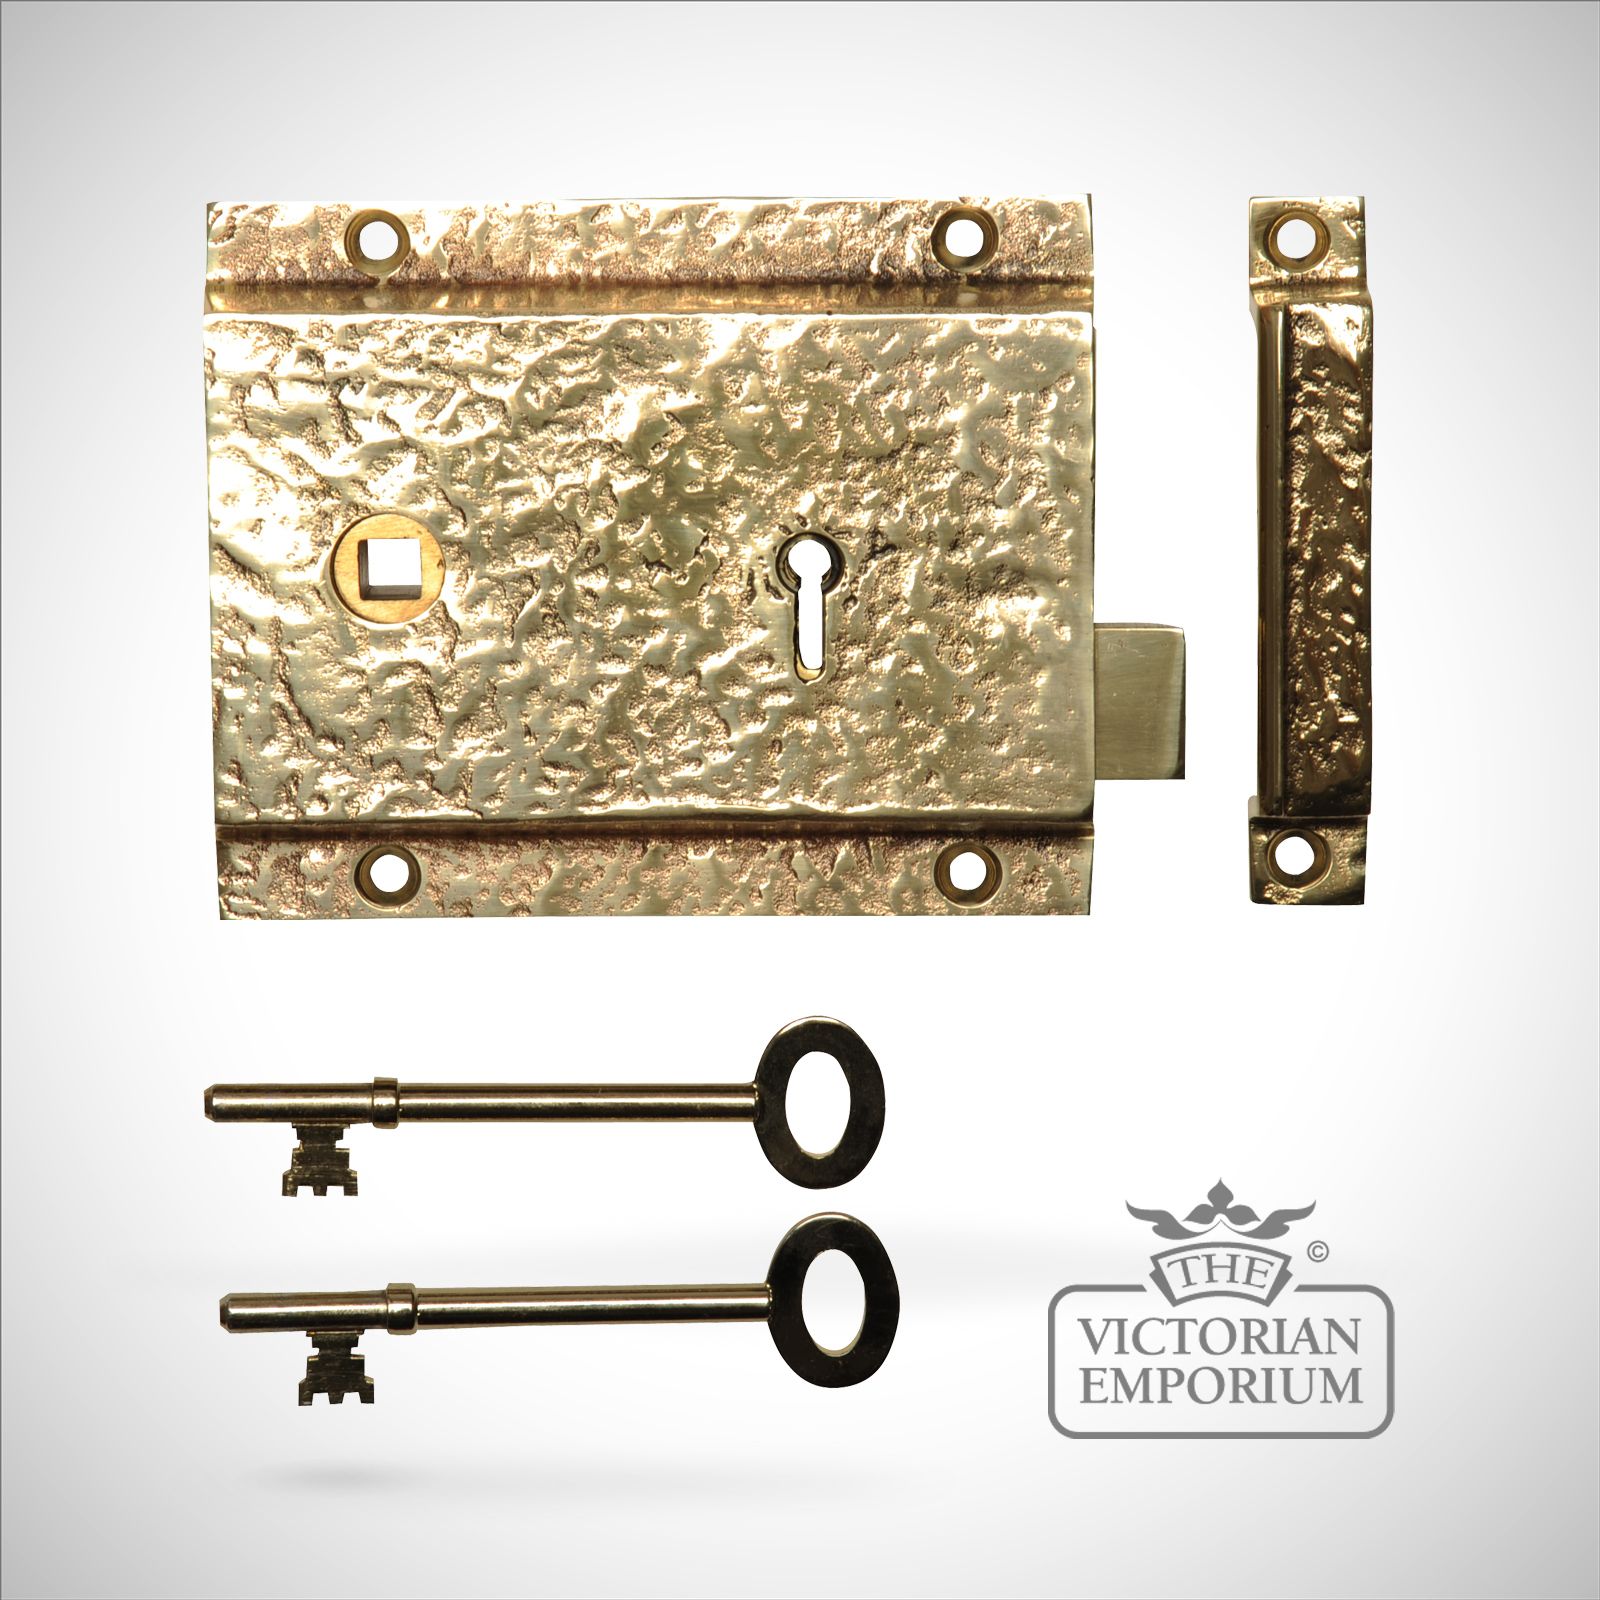 Rim lock/latch in cast brass